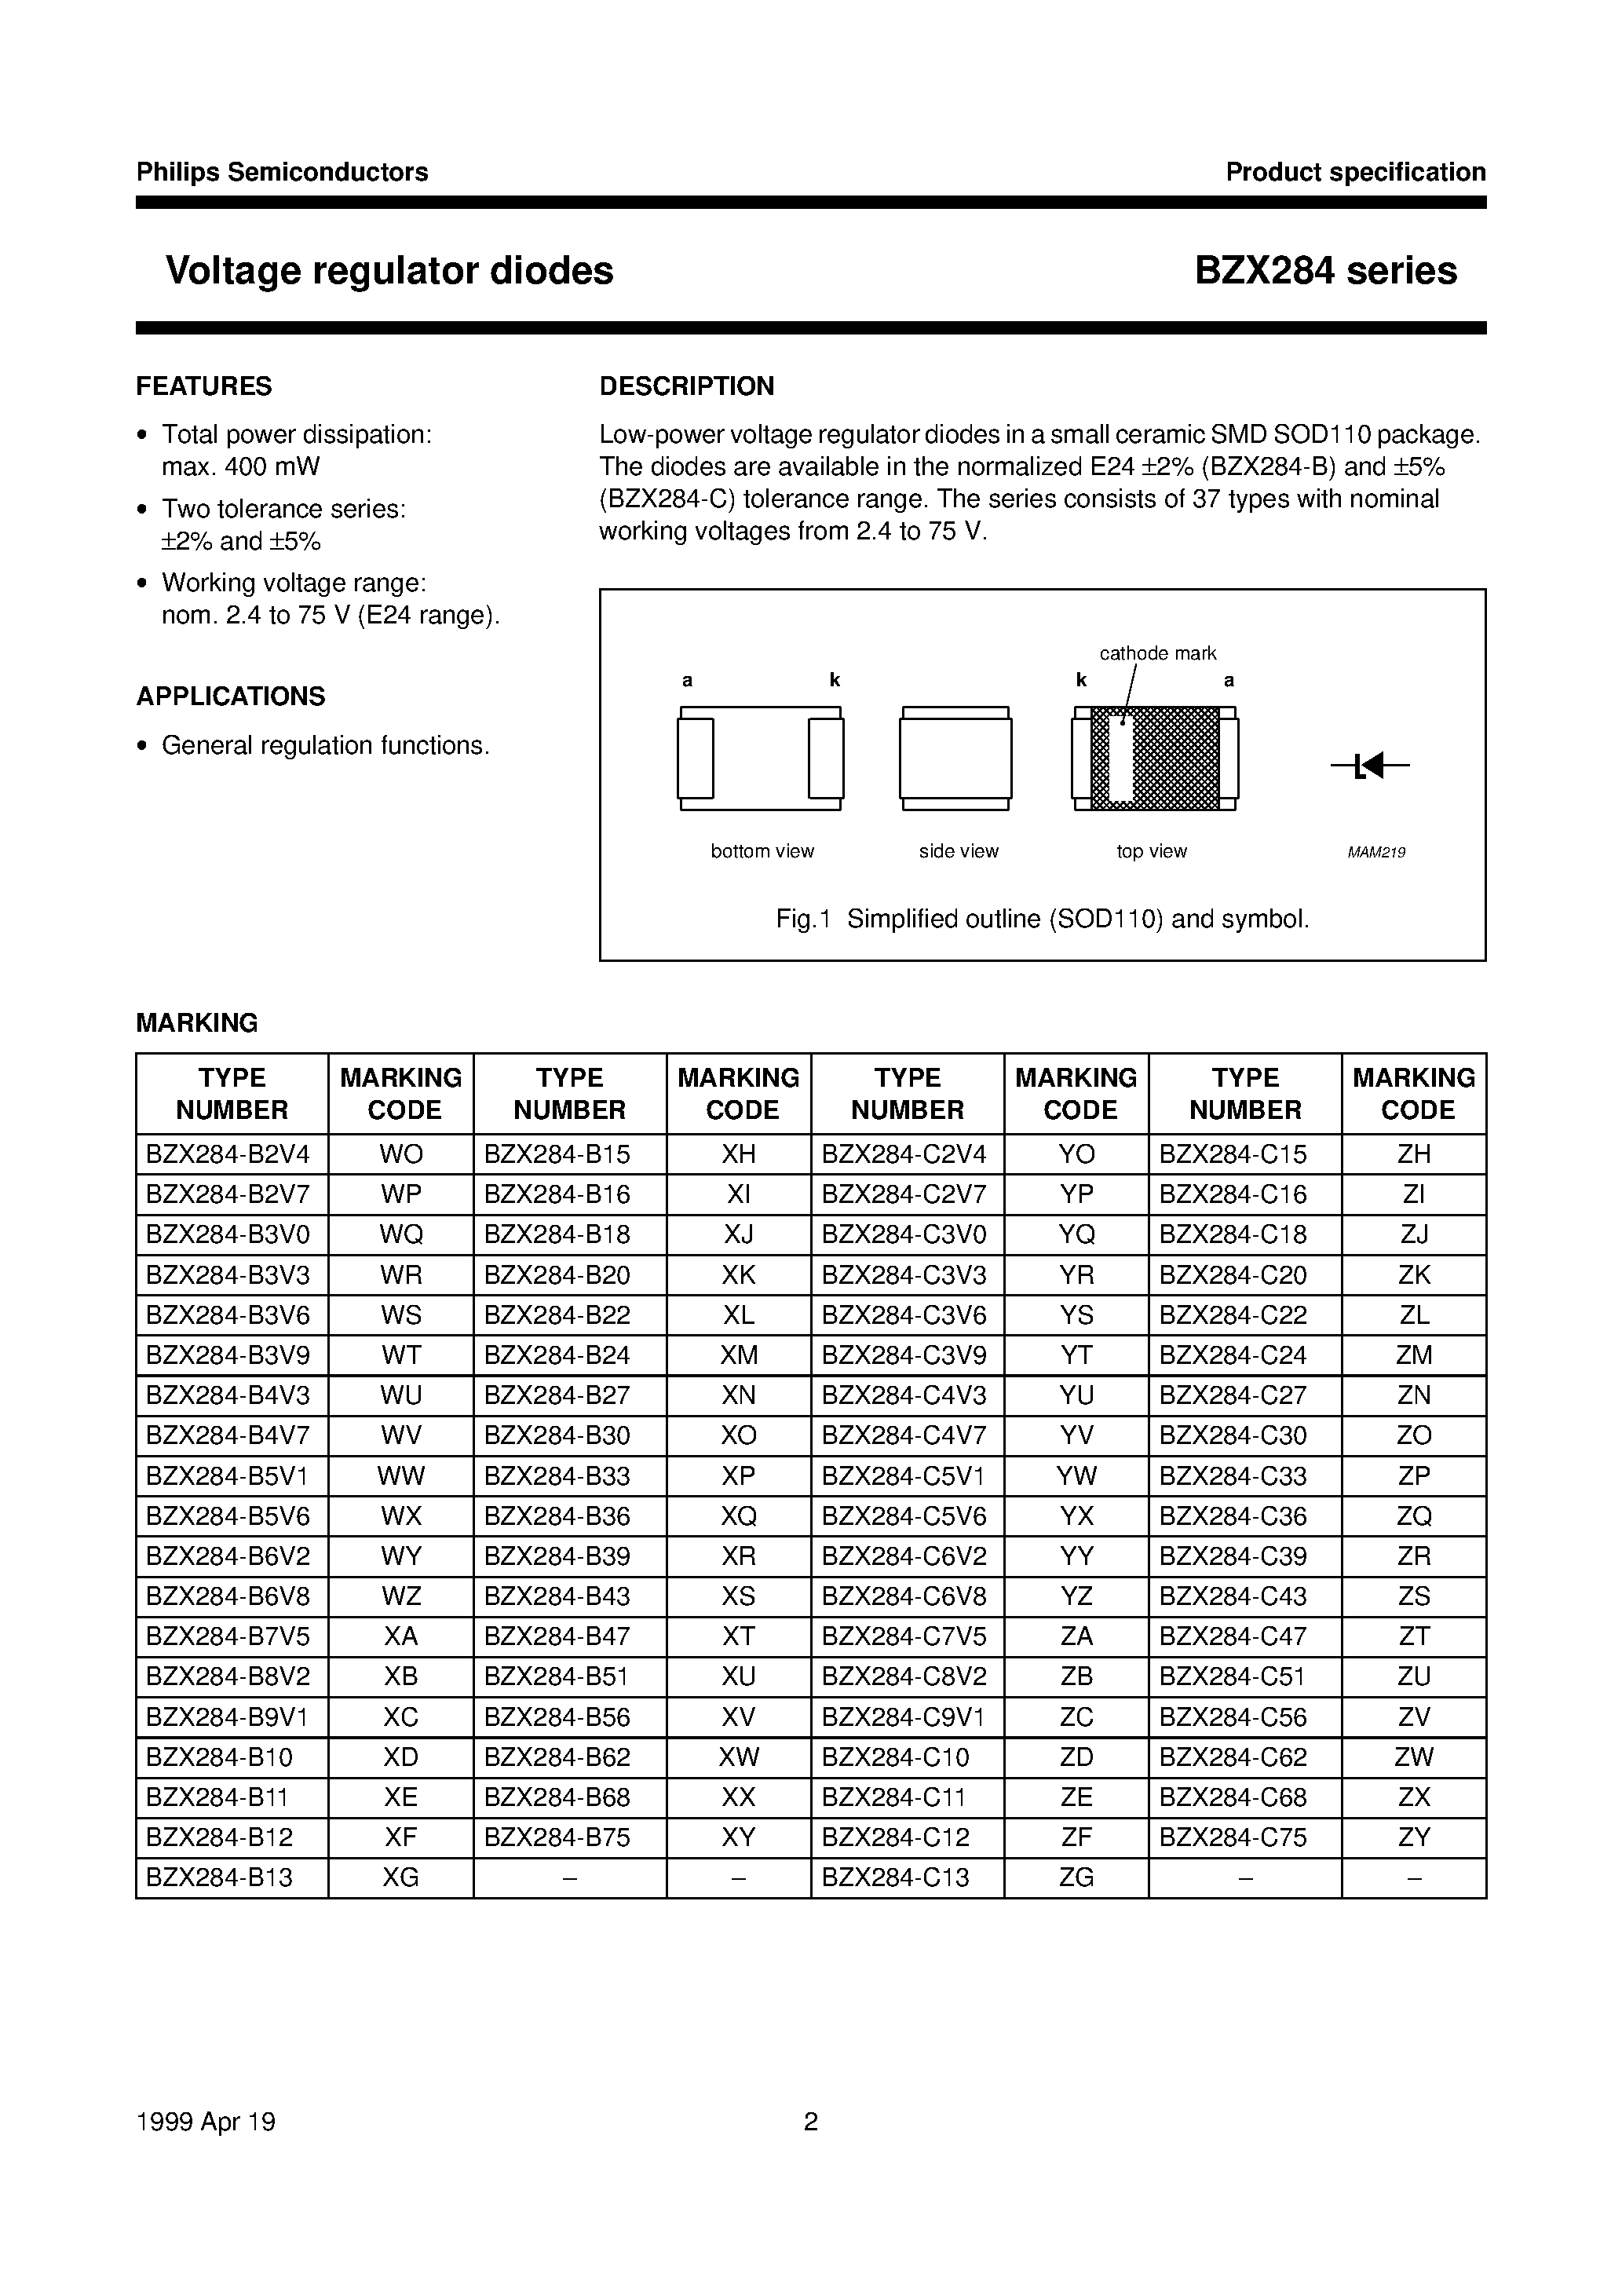 Datasheet BZX284-B22 - Voltage regulator diodes page 2